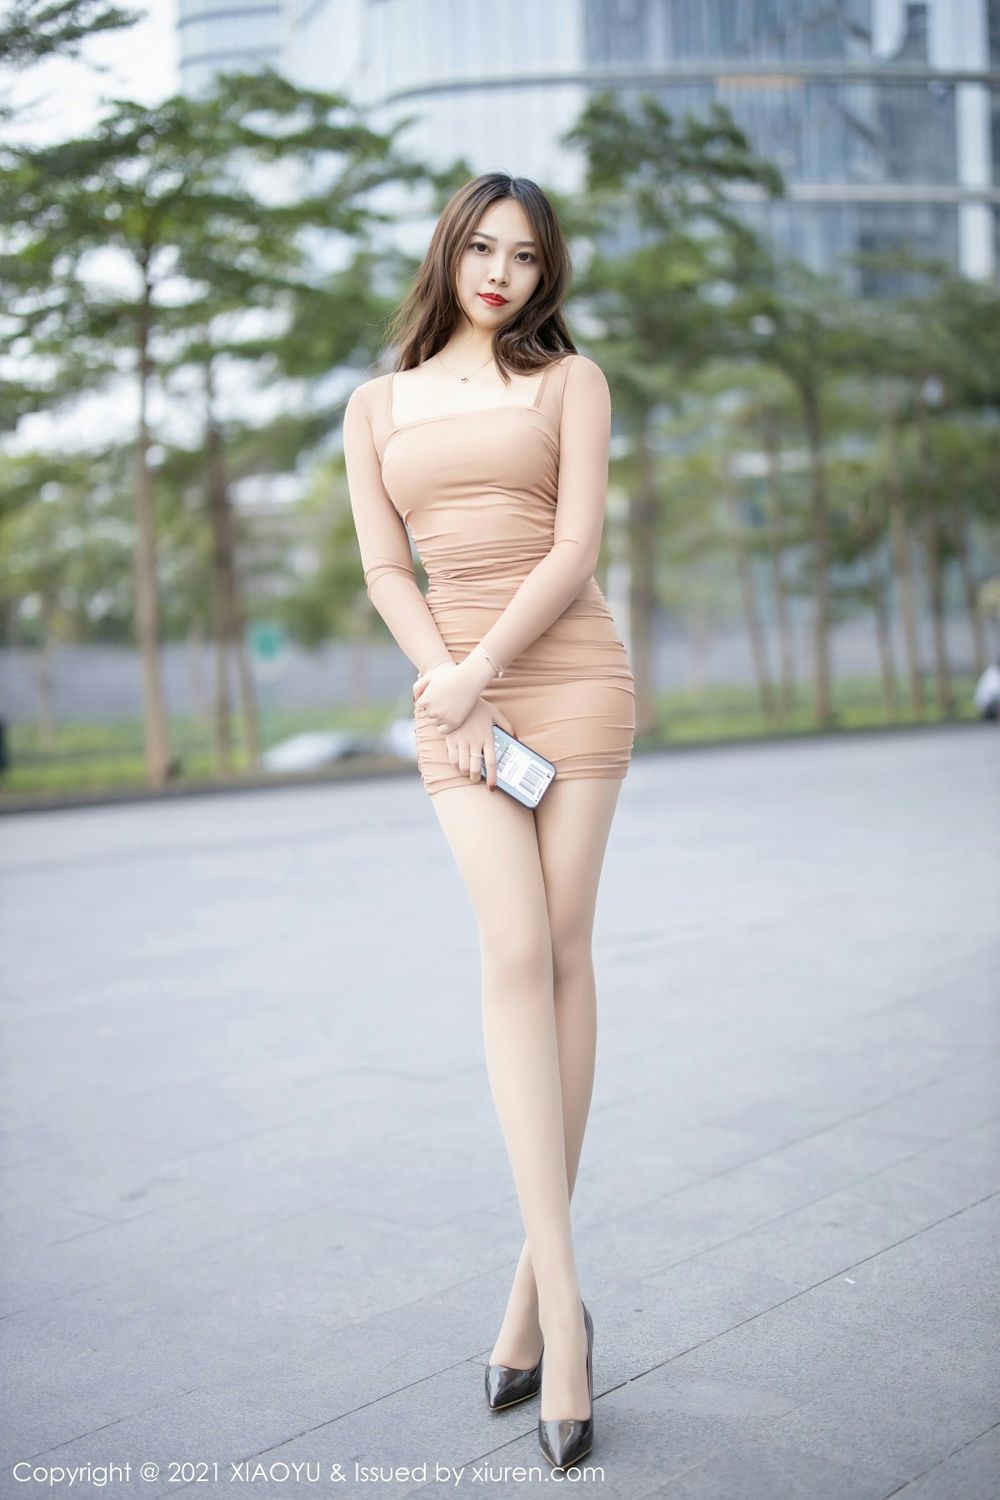 美女模特郑颖姗紧身服饰肉色丝袜美腿修长性感写真